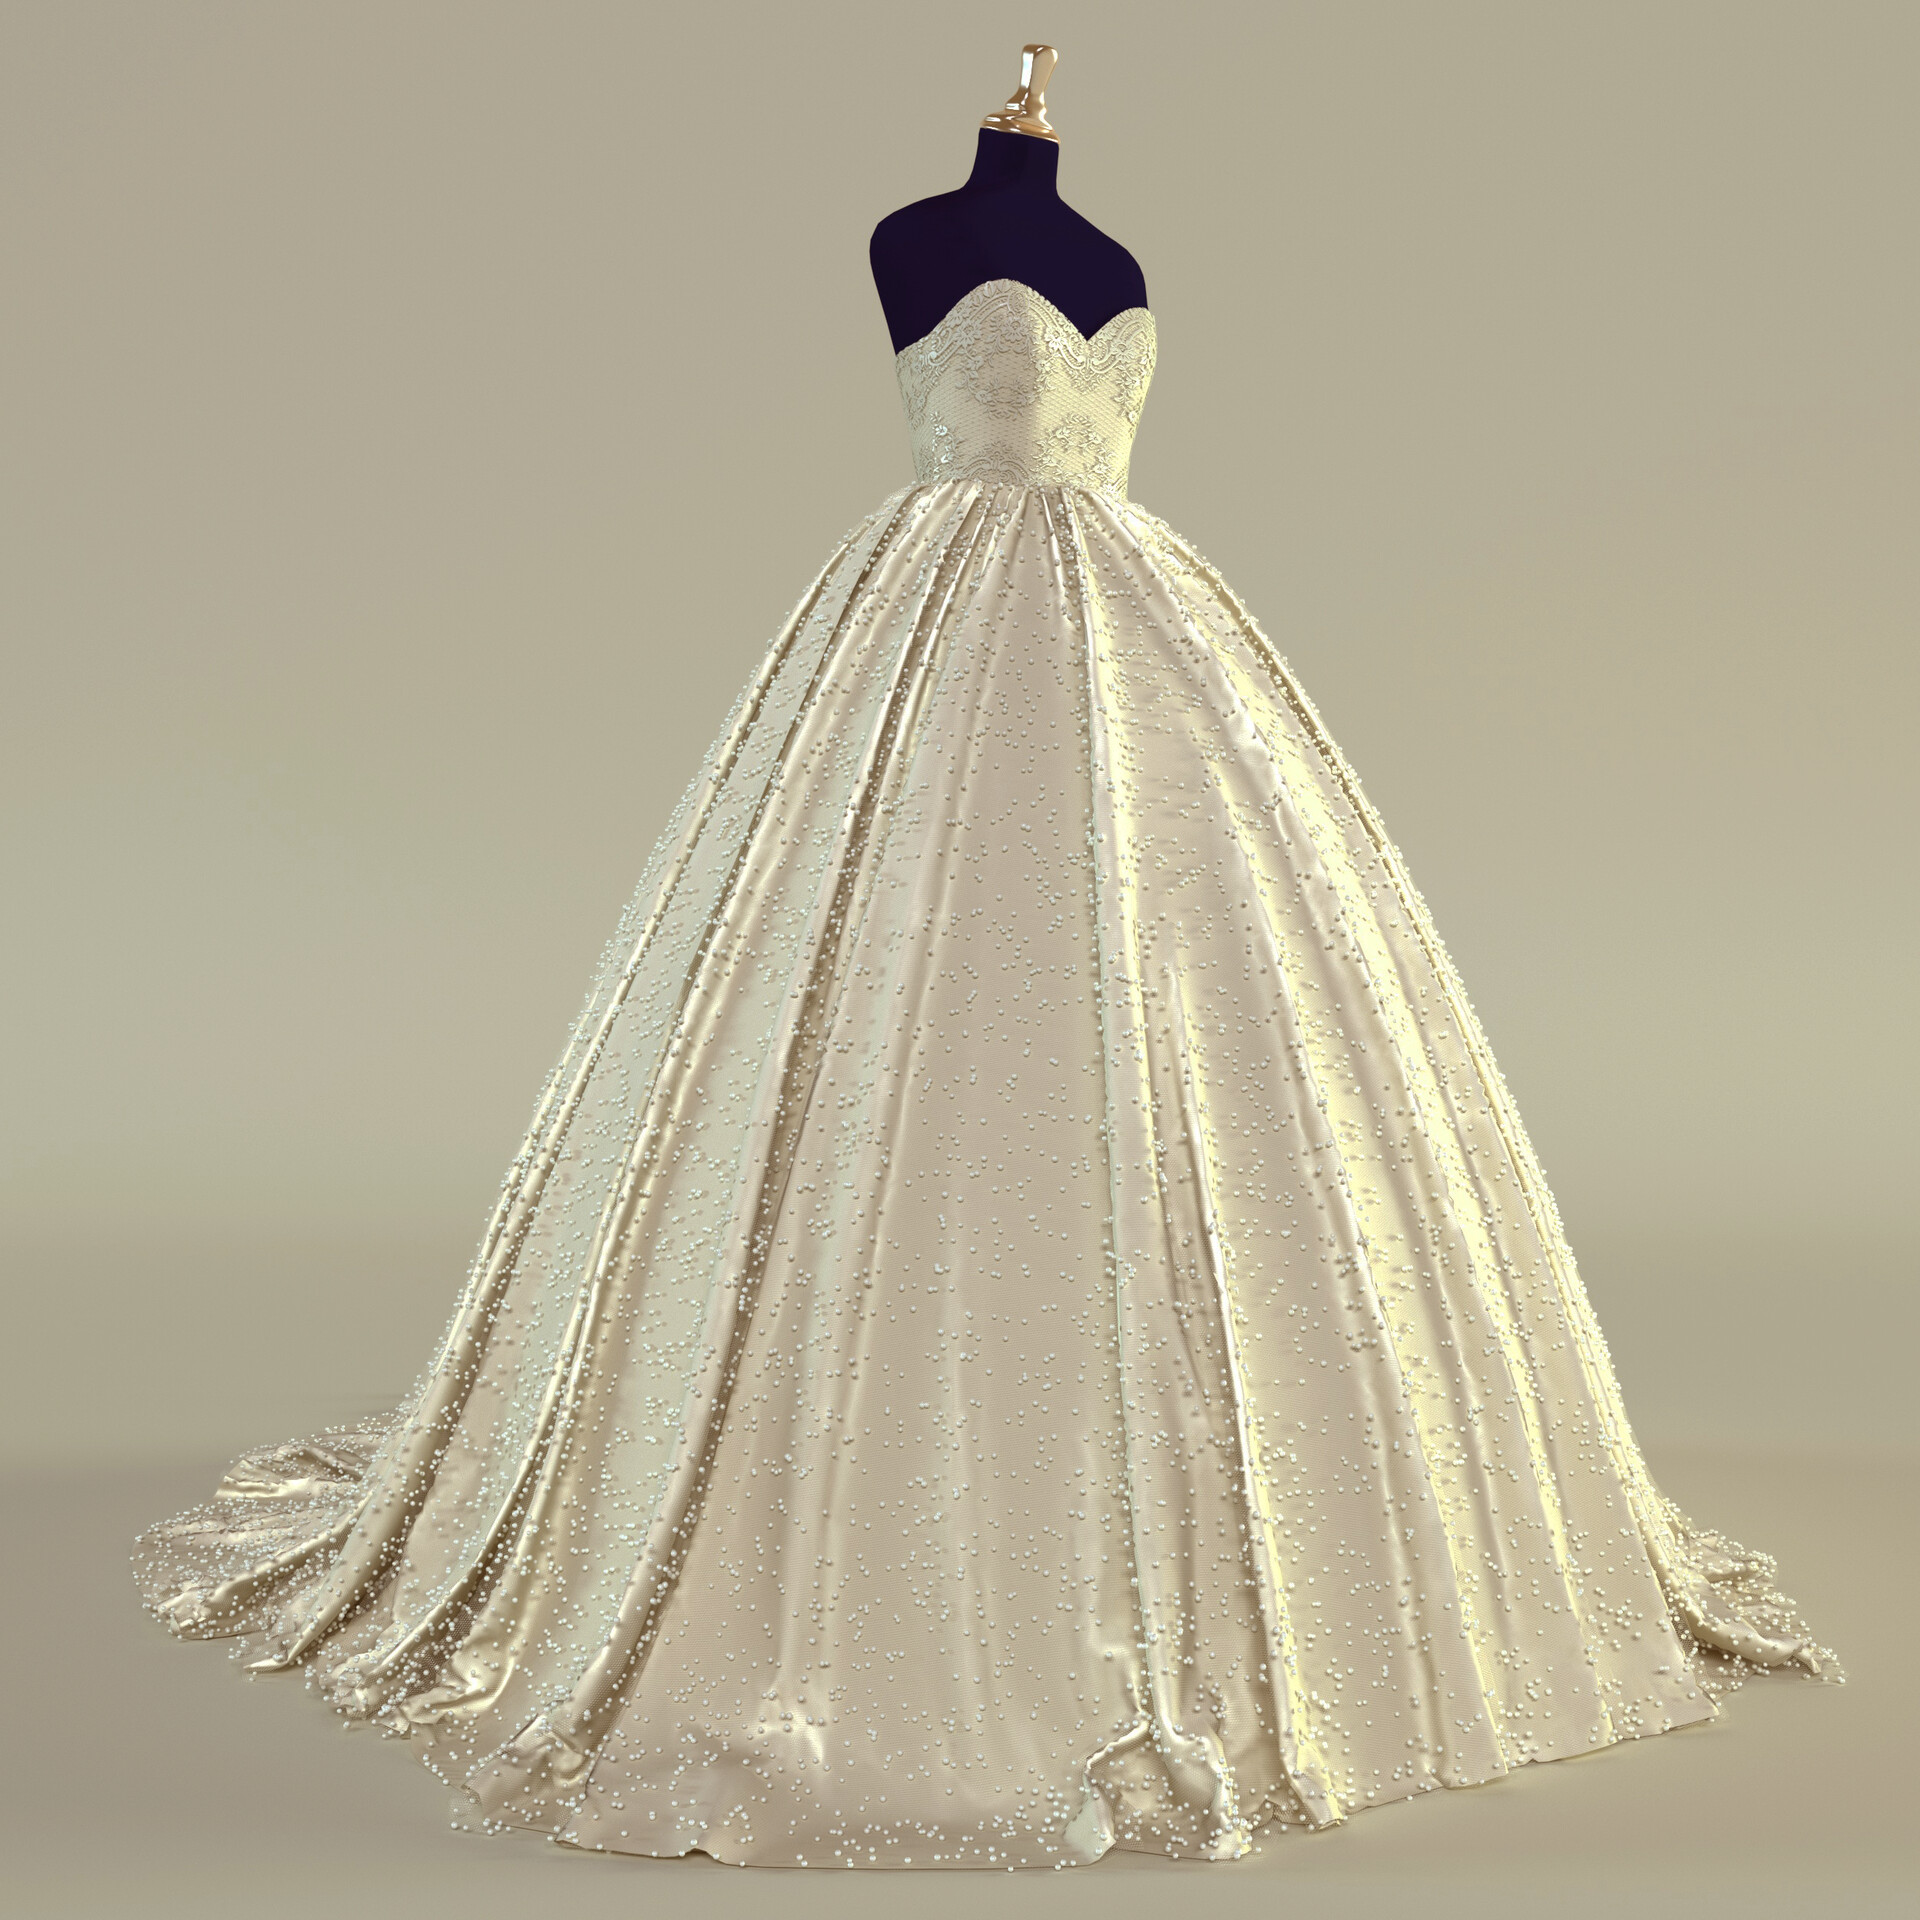 ArtStation - Bride dress